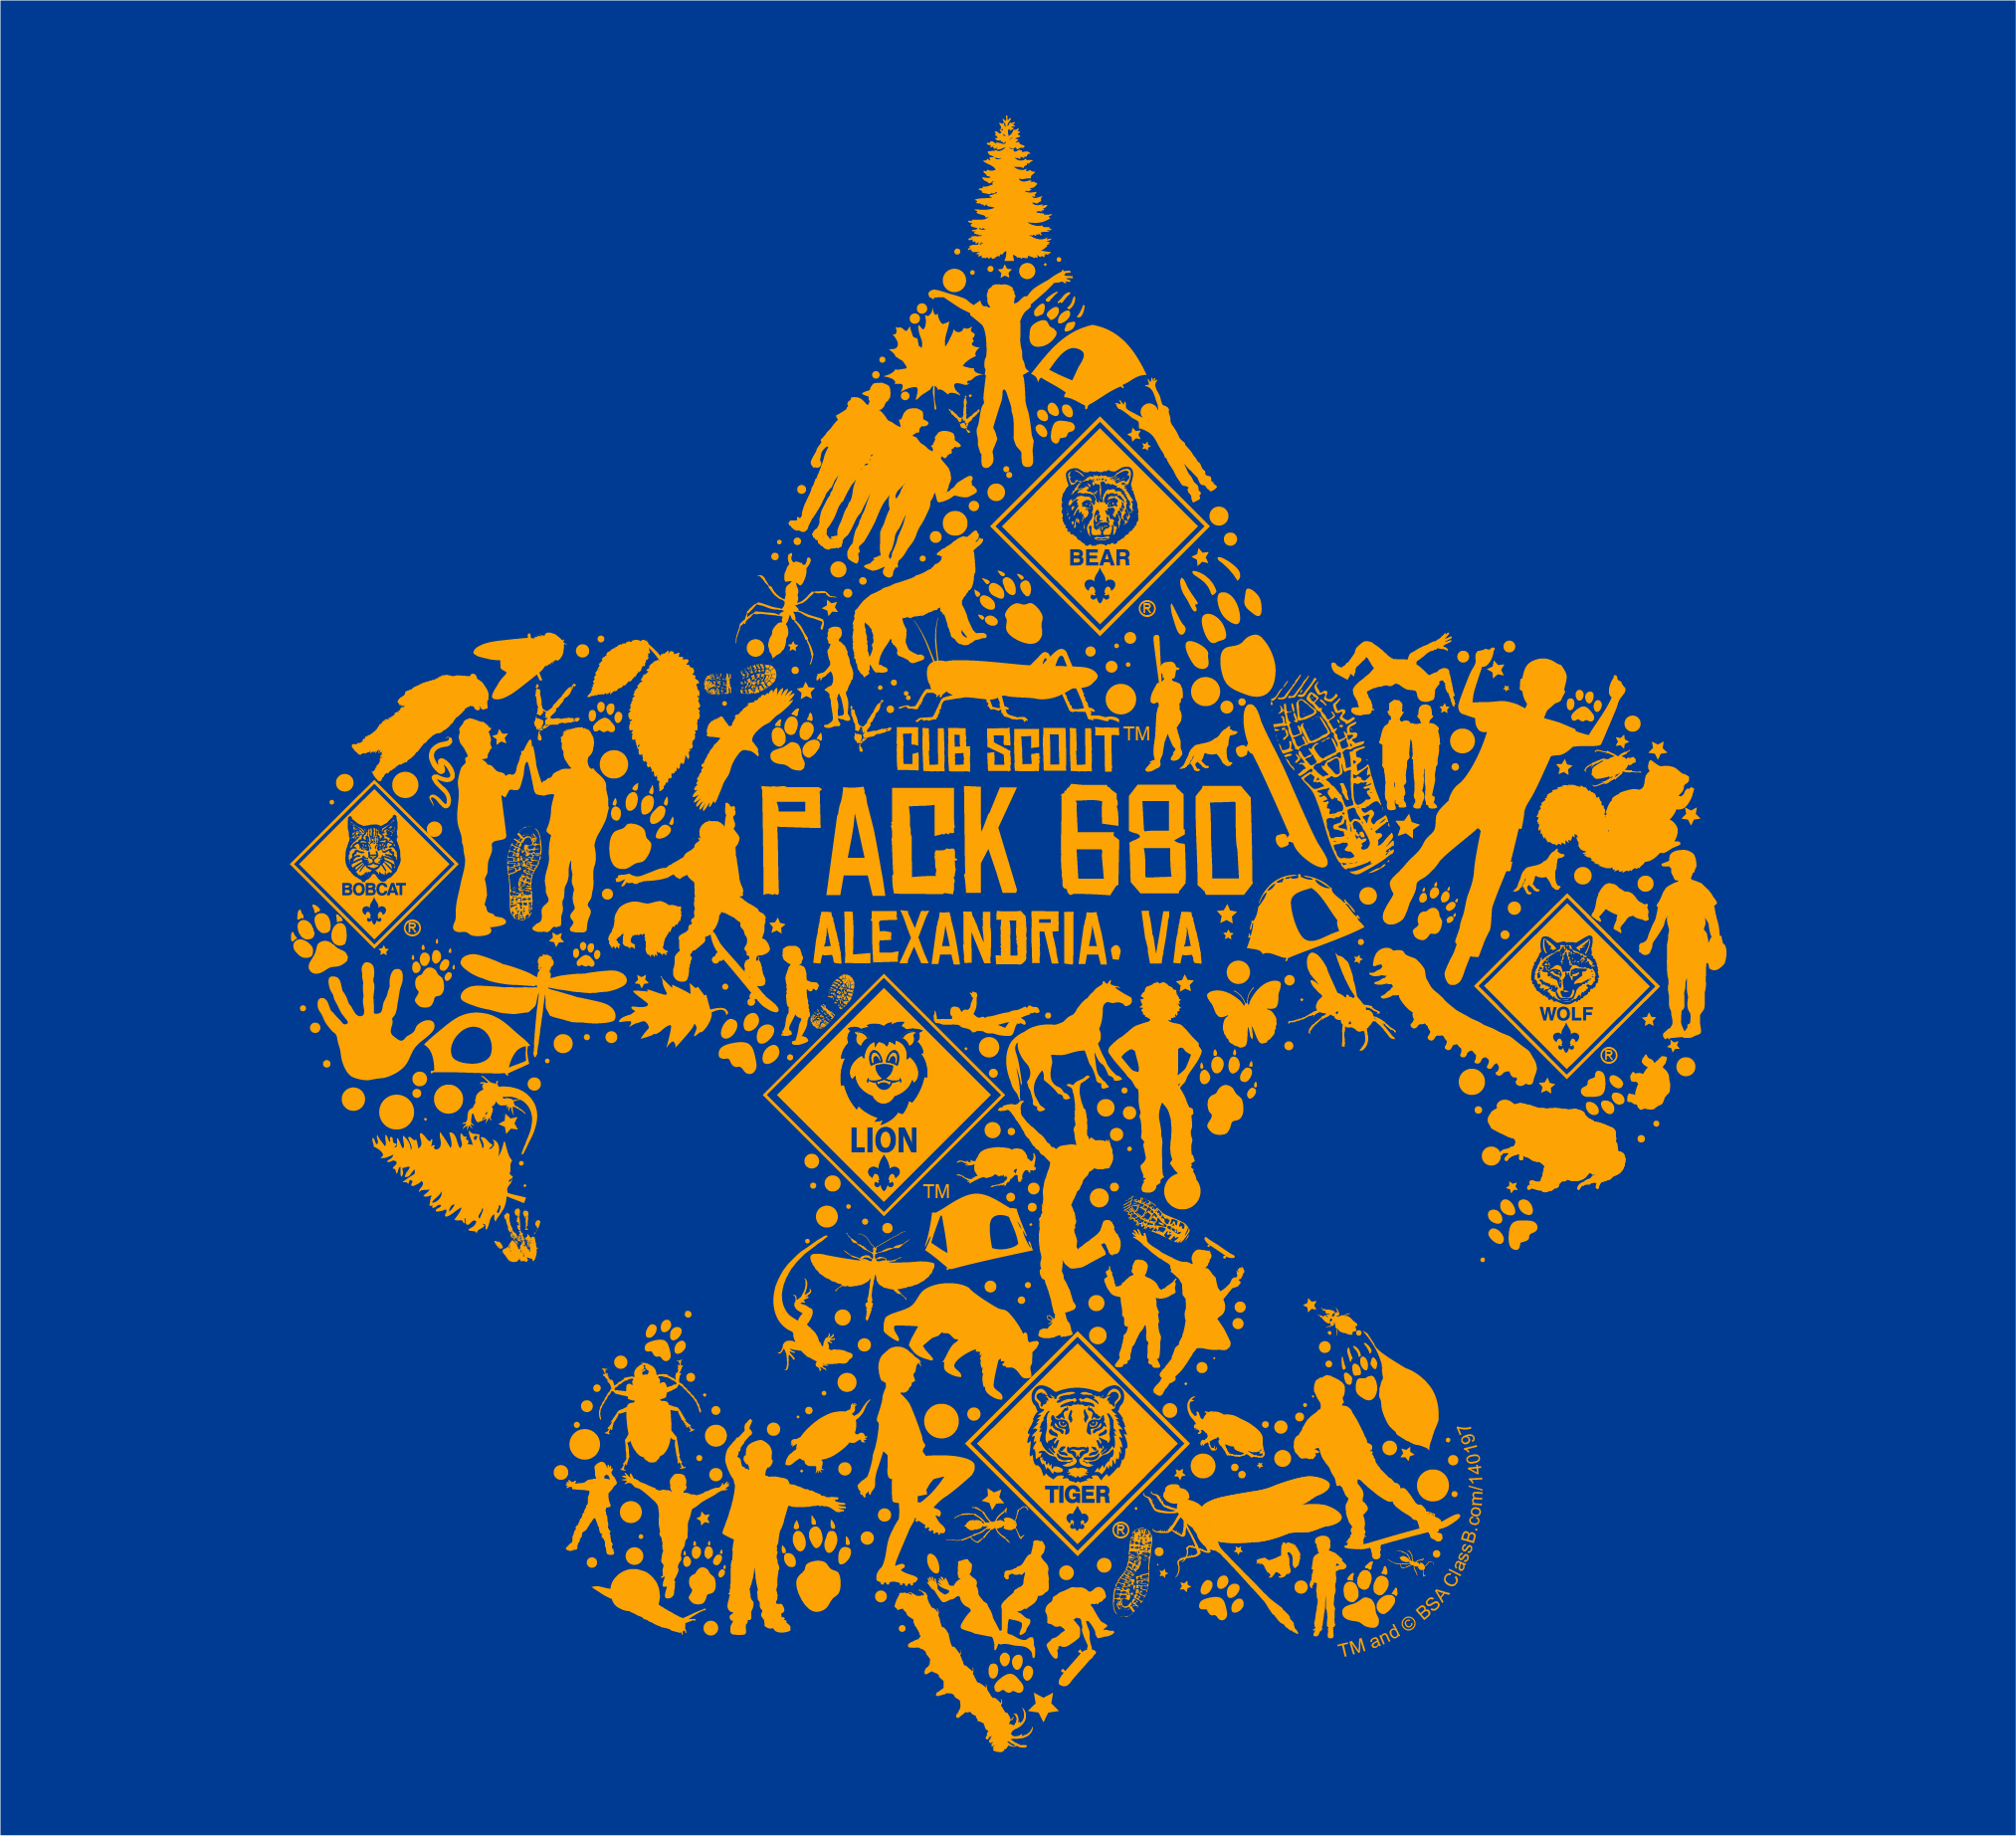 Pack 680 class B logo